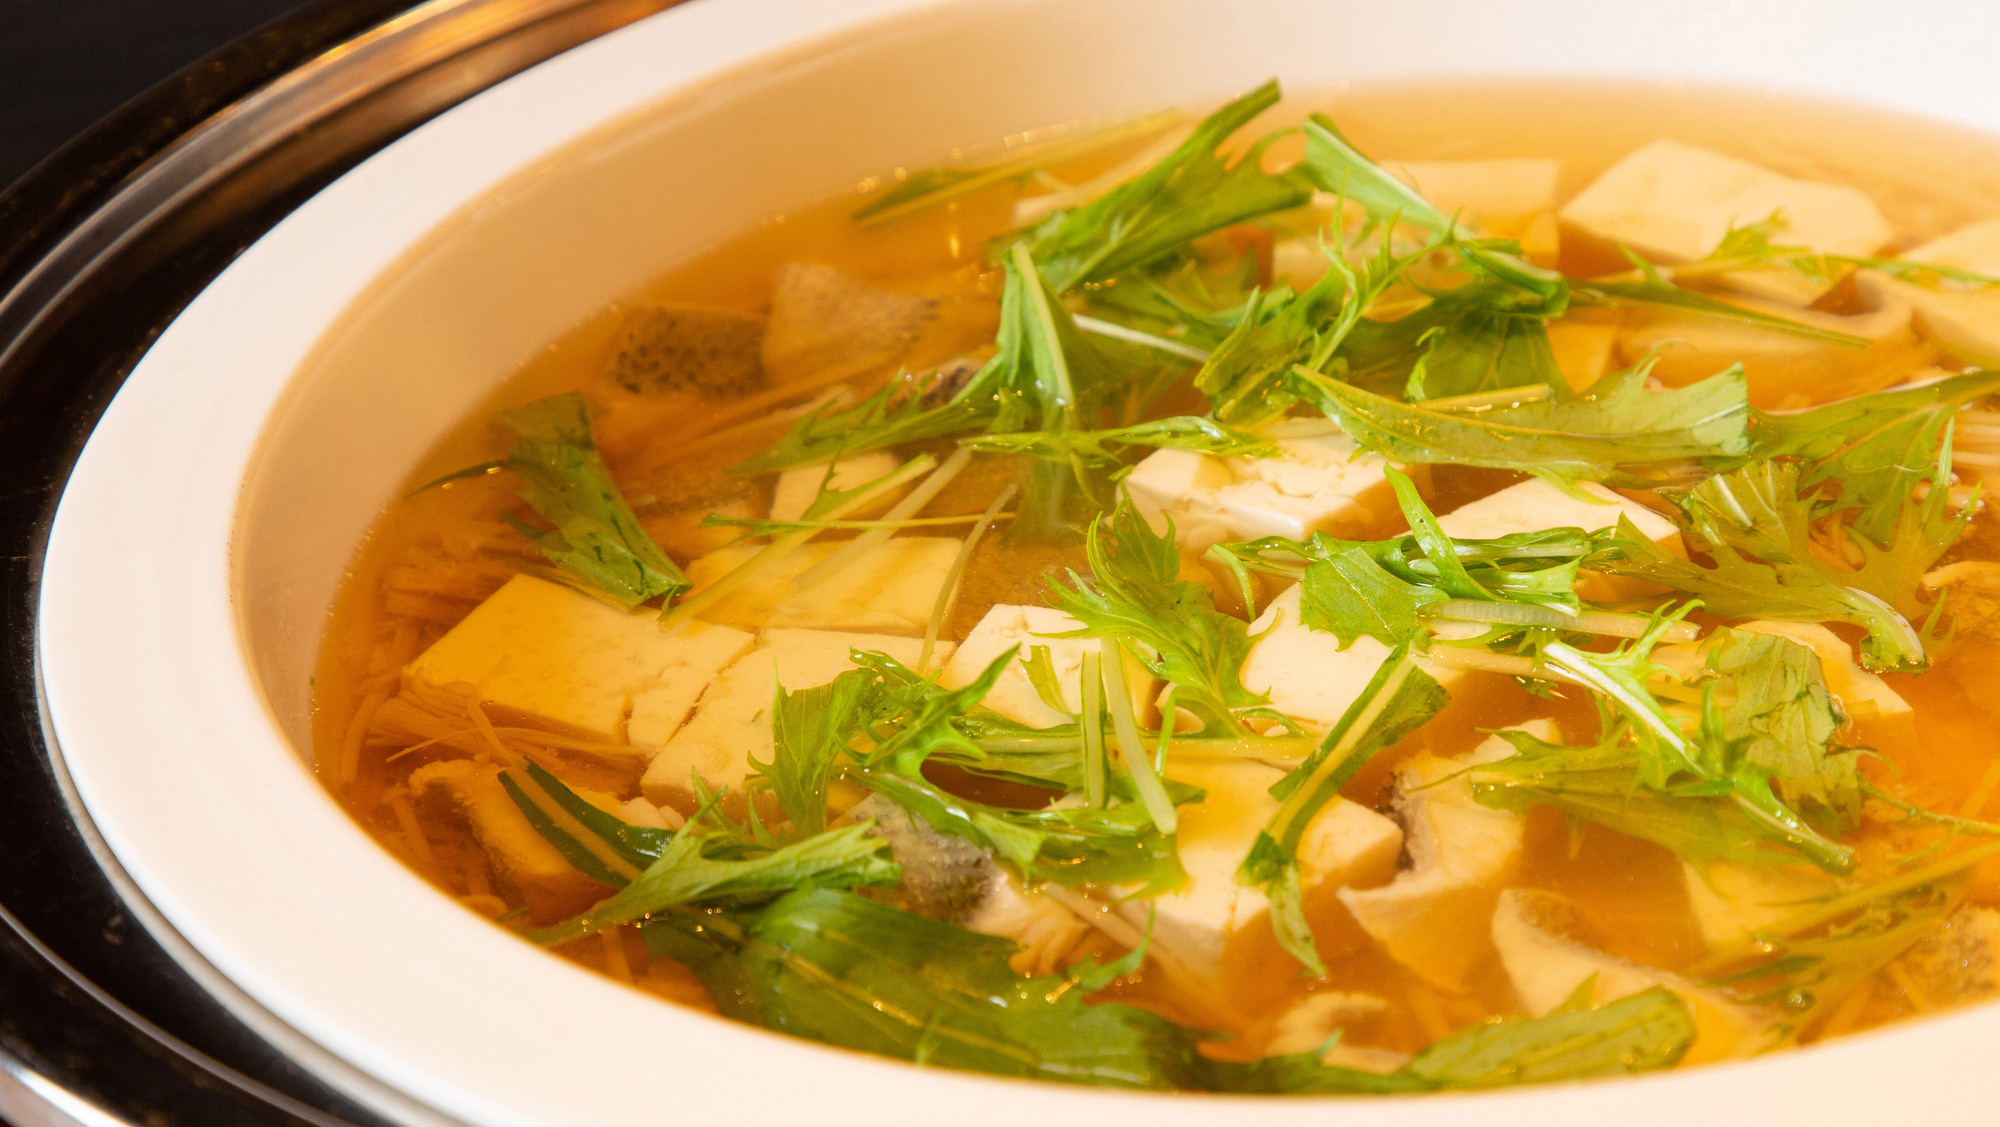 【青函市場・朝食一例】青函市場らしく、湯豆腐にはタラや季節の野菜、キノコ類を加えております